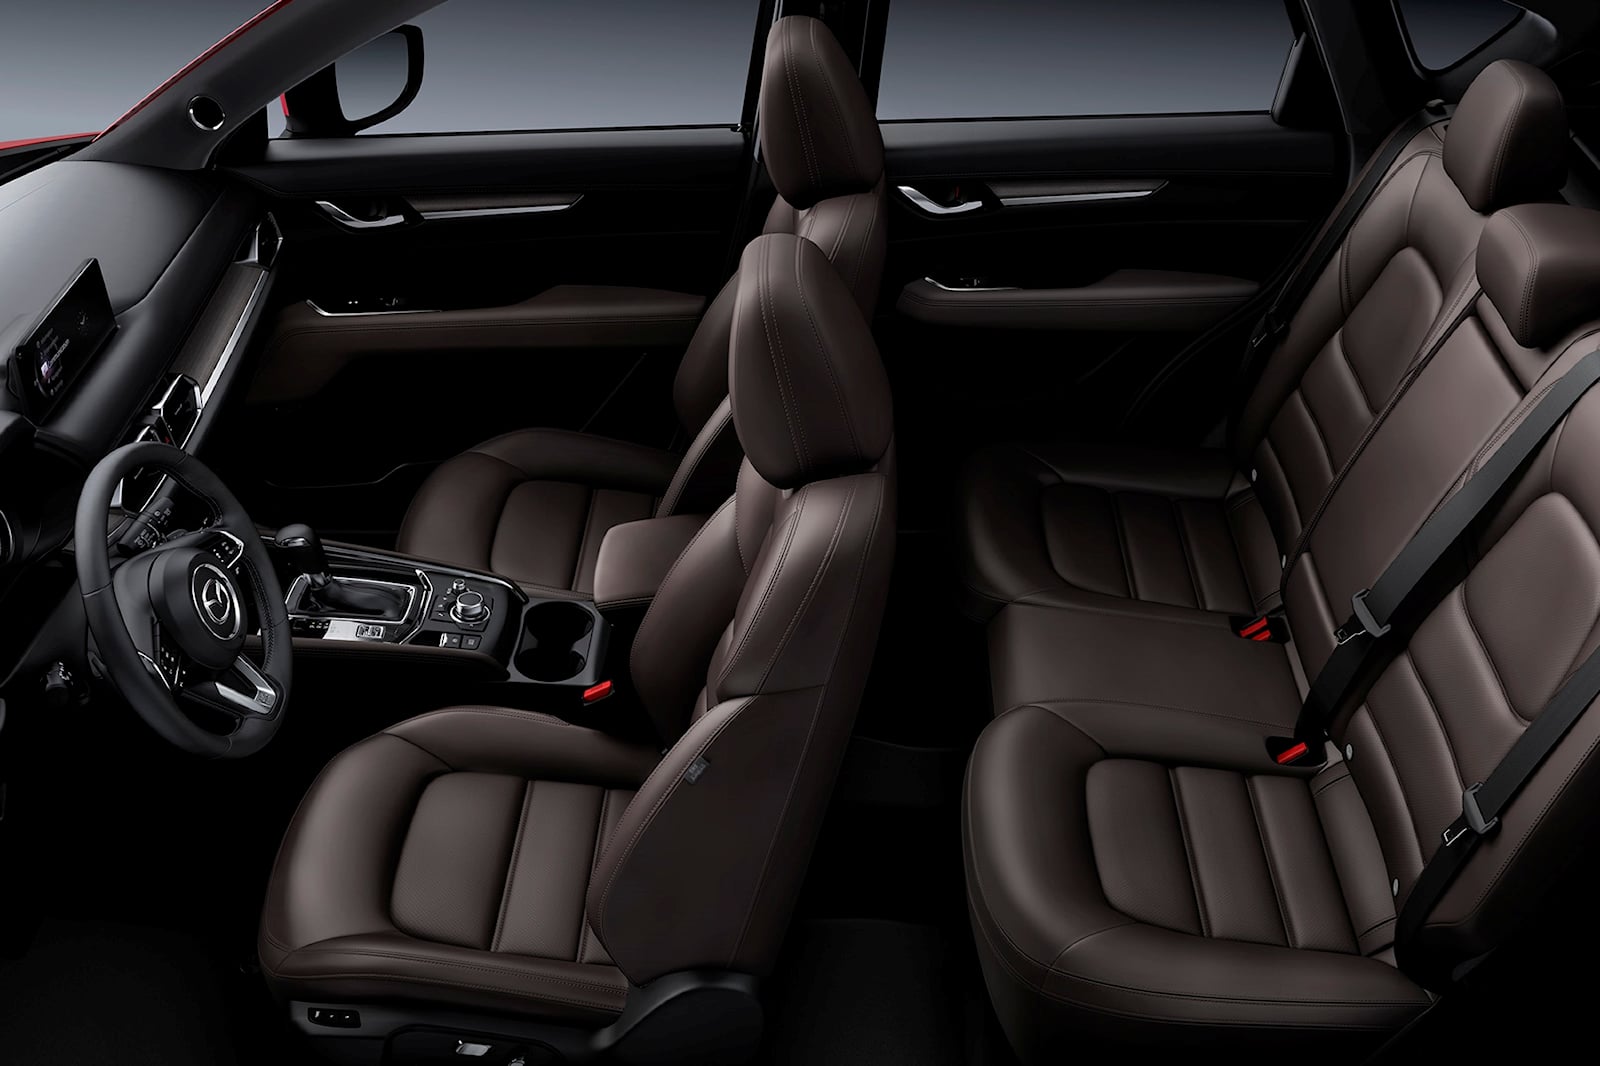 Mazda CX-5 interior - Seats